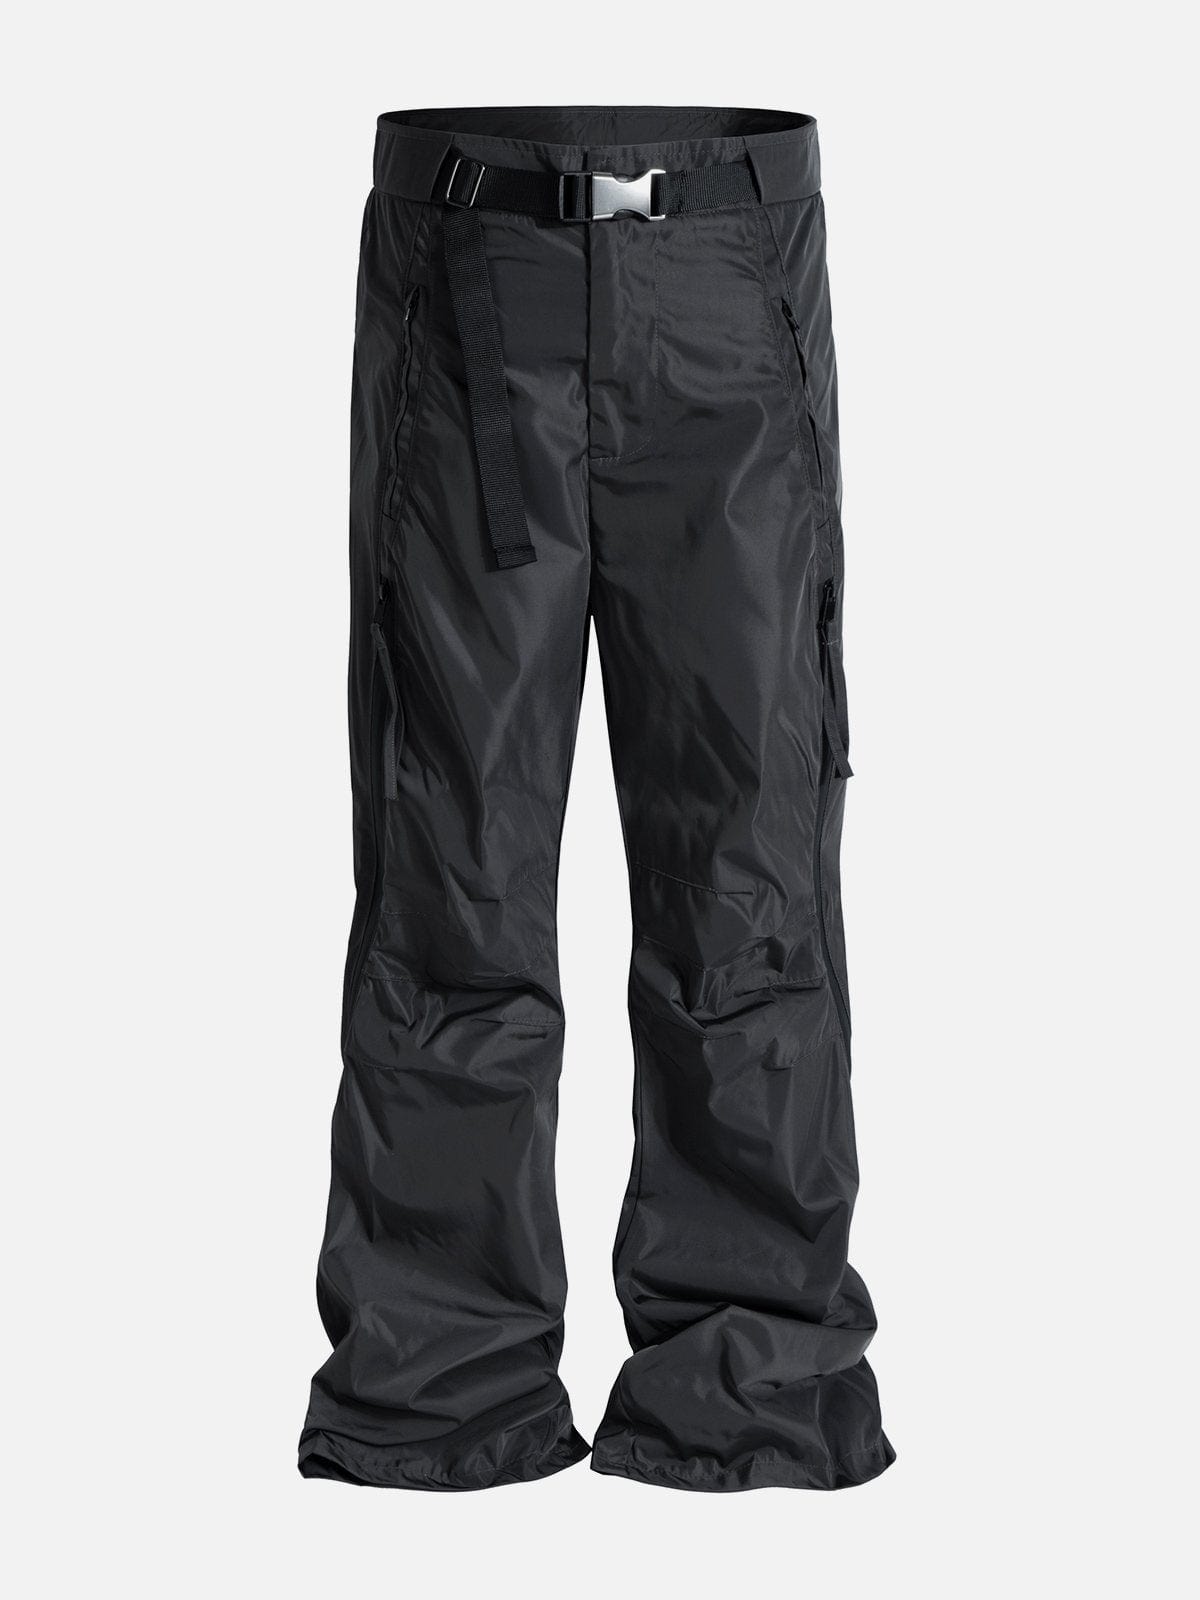 NEV Waterproof Bootcut Casual Pants